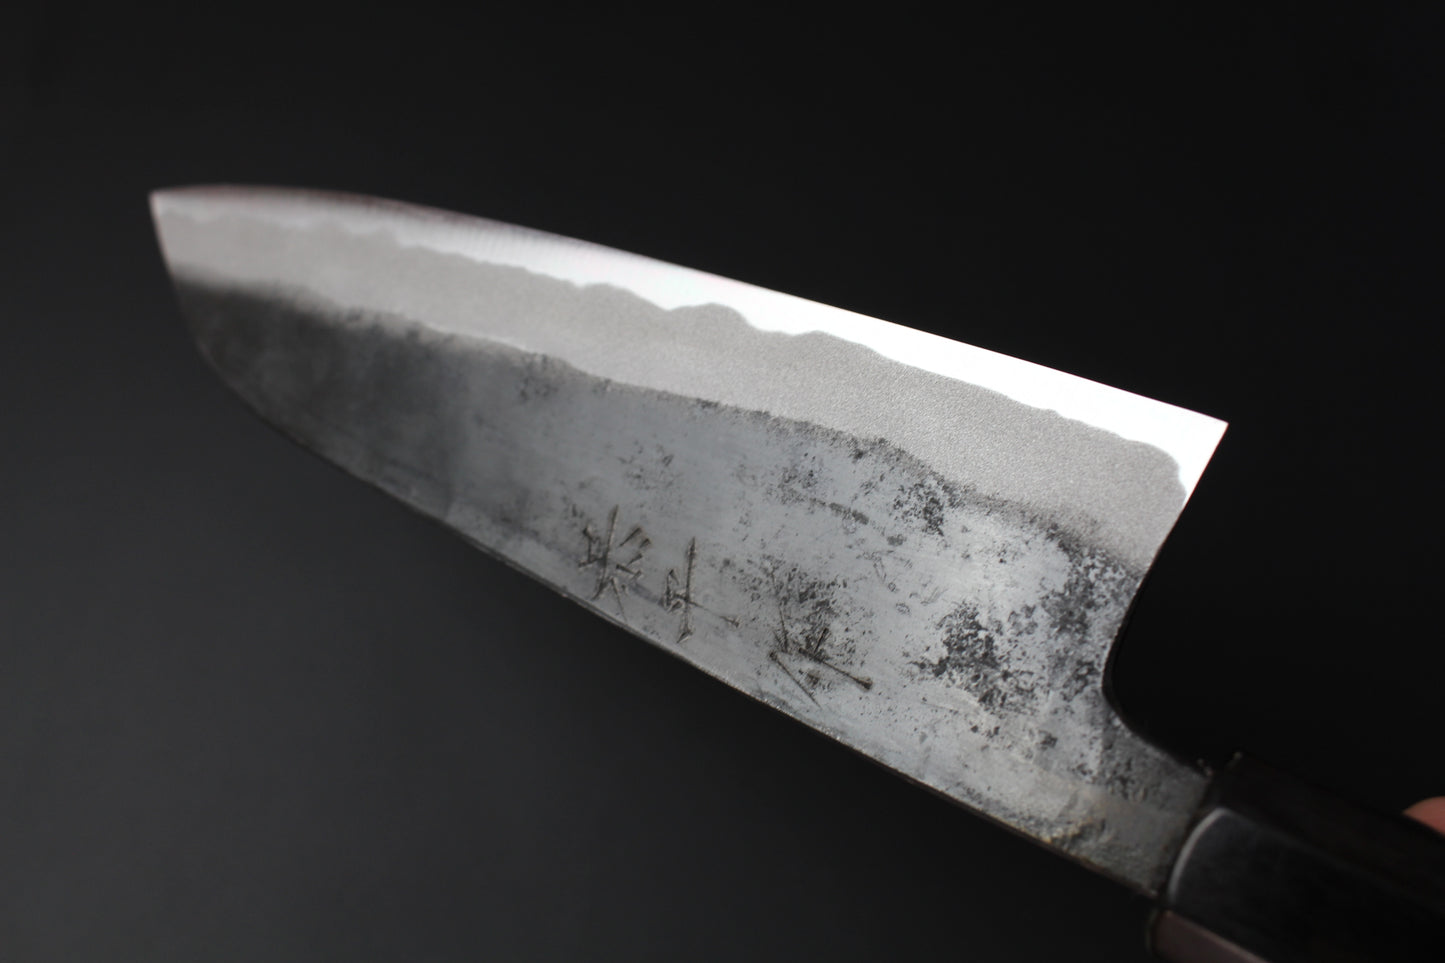 Kyohei Shindo - Aogami No.2 Santoku Kurouchi knife 165mm